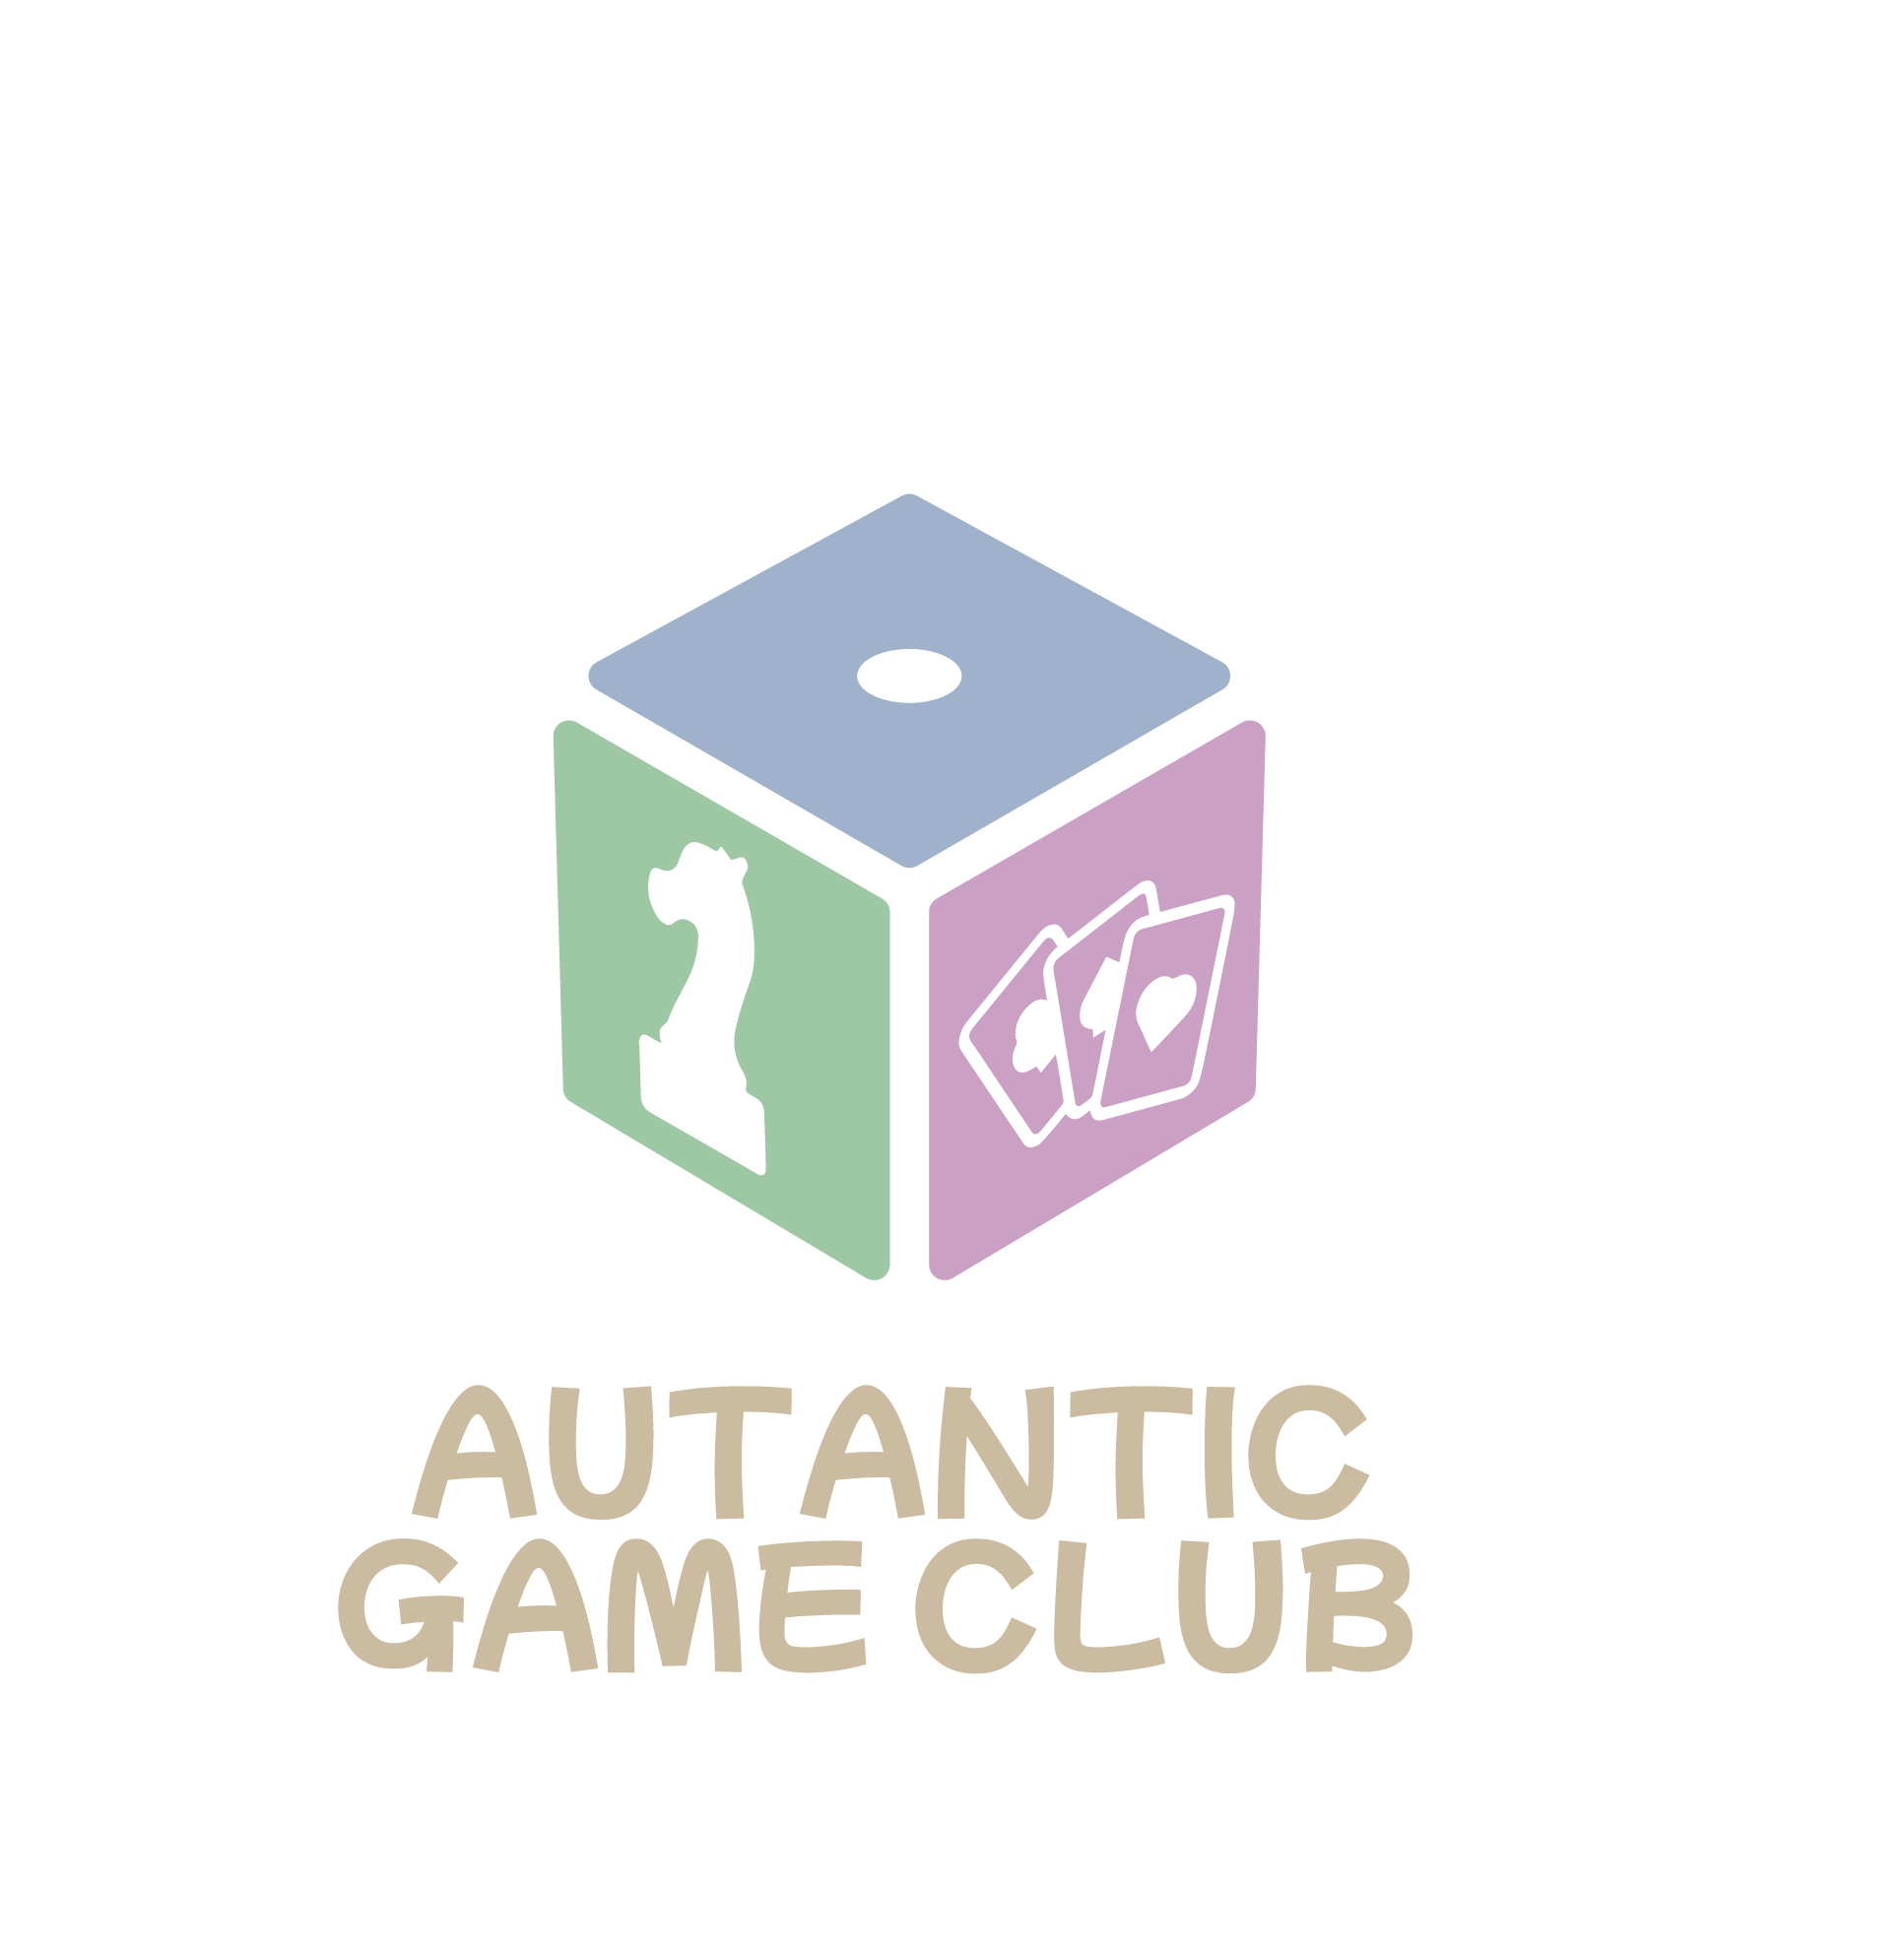 Antantic Game Club